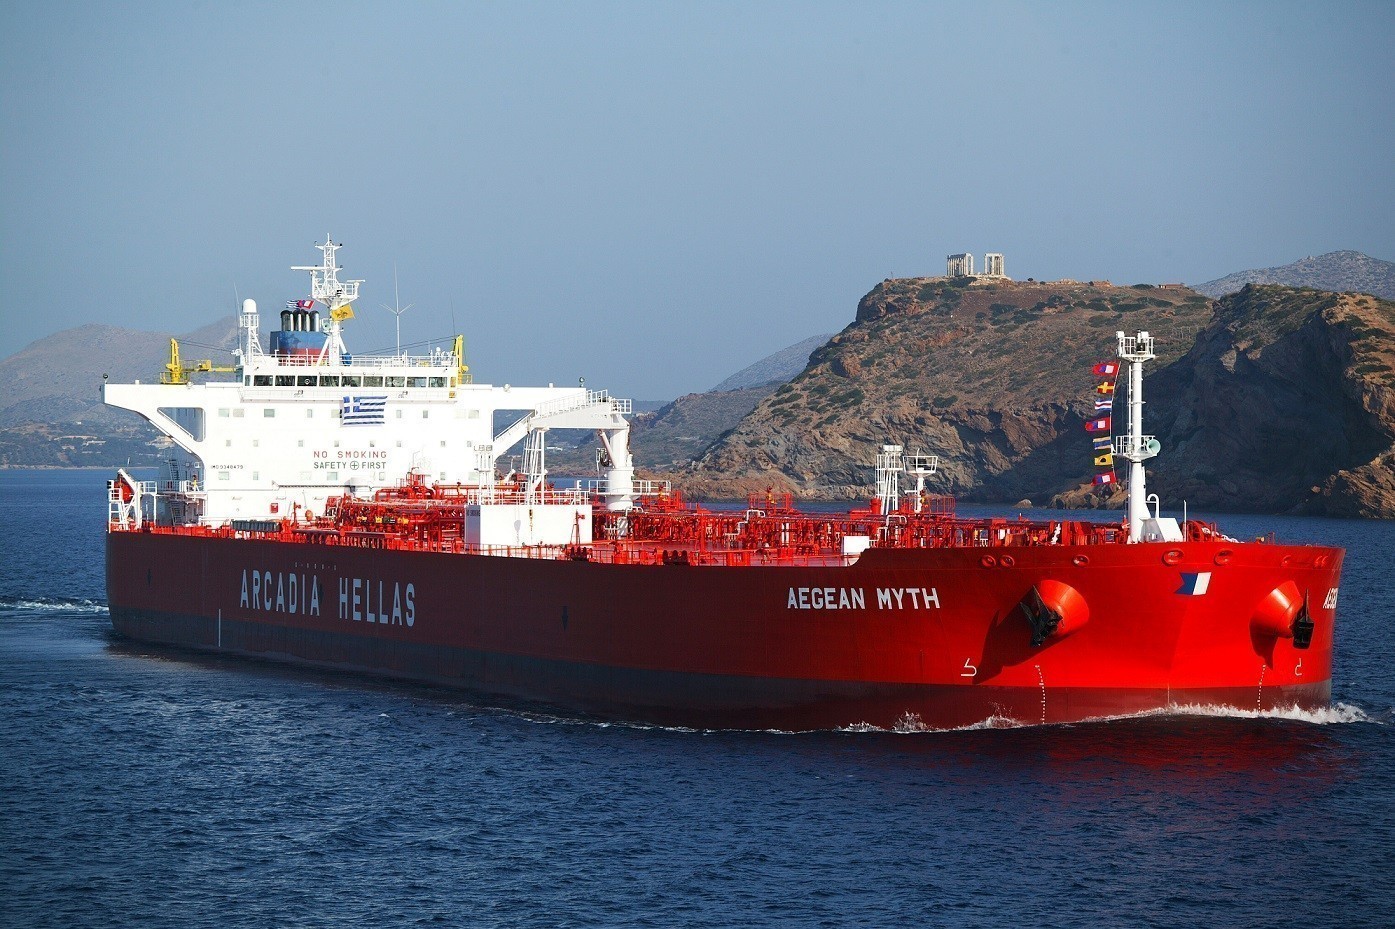 Χαλυβουργική – Arcadia: Αντίθετες πορείες – Ποια είναι η οικολογική και ελληνική ναυτιλιακή εταιρεία των Αγγελόπουλων